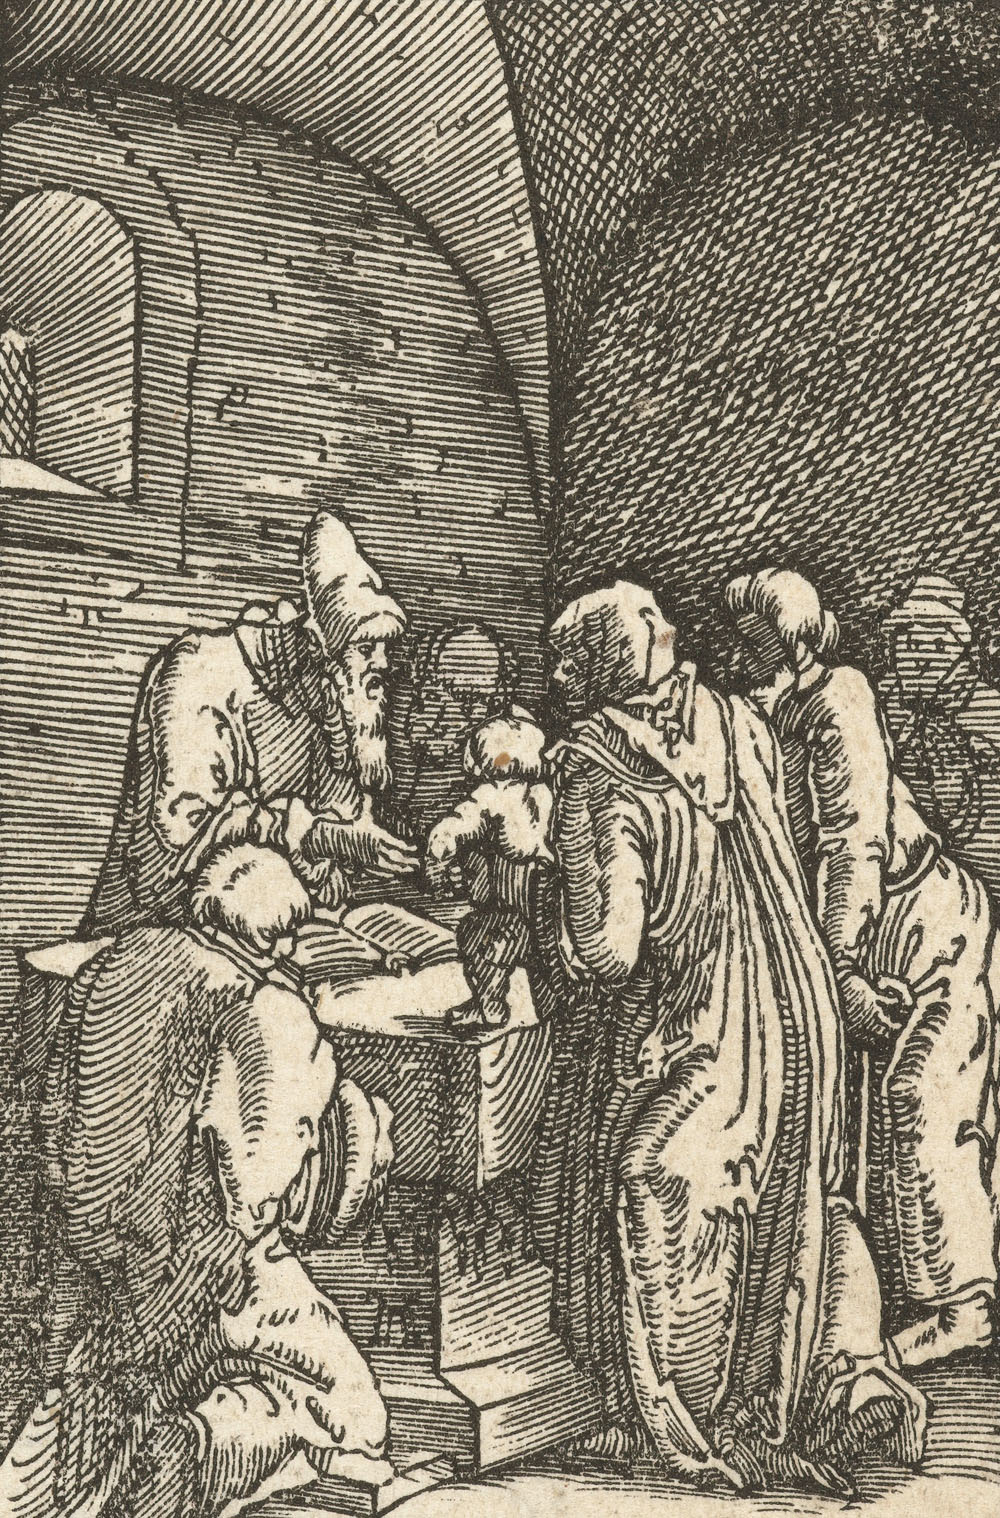 Альбрехт альтдорфер. Представление Христа в храме. 1506-1538.